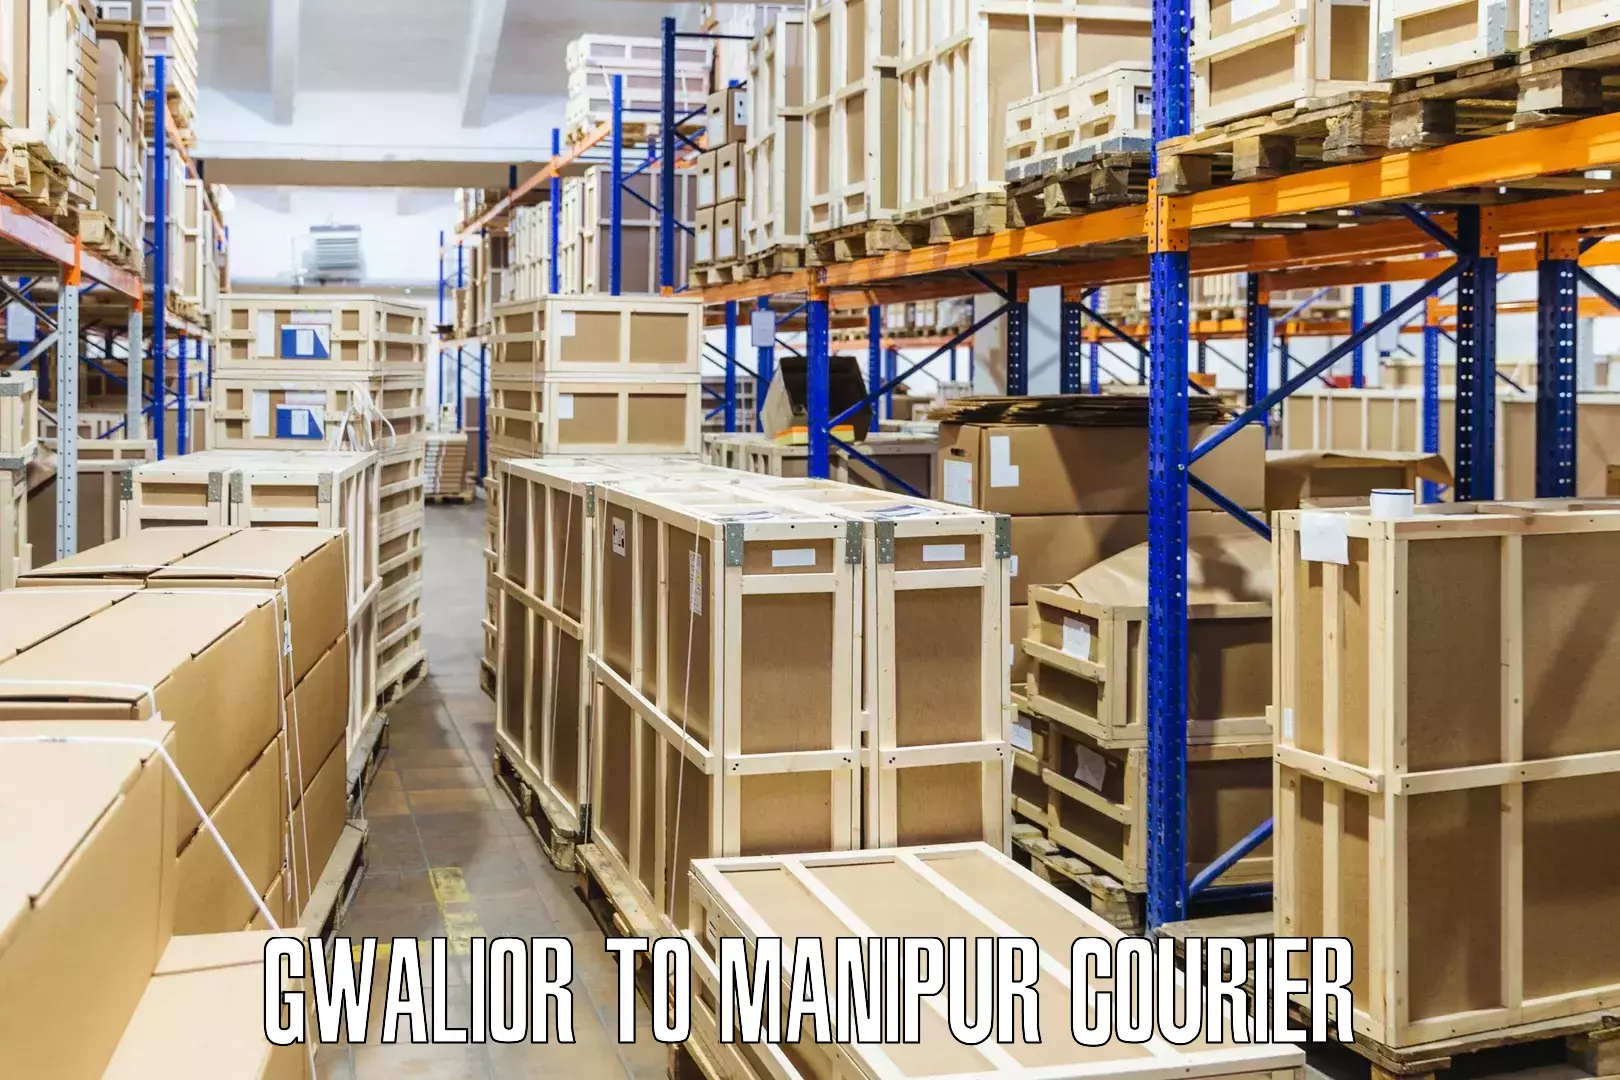 Efficient parcel service Gwalior to Senapati